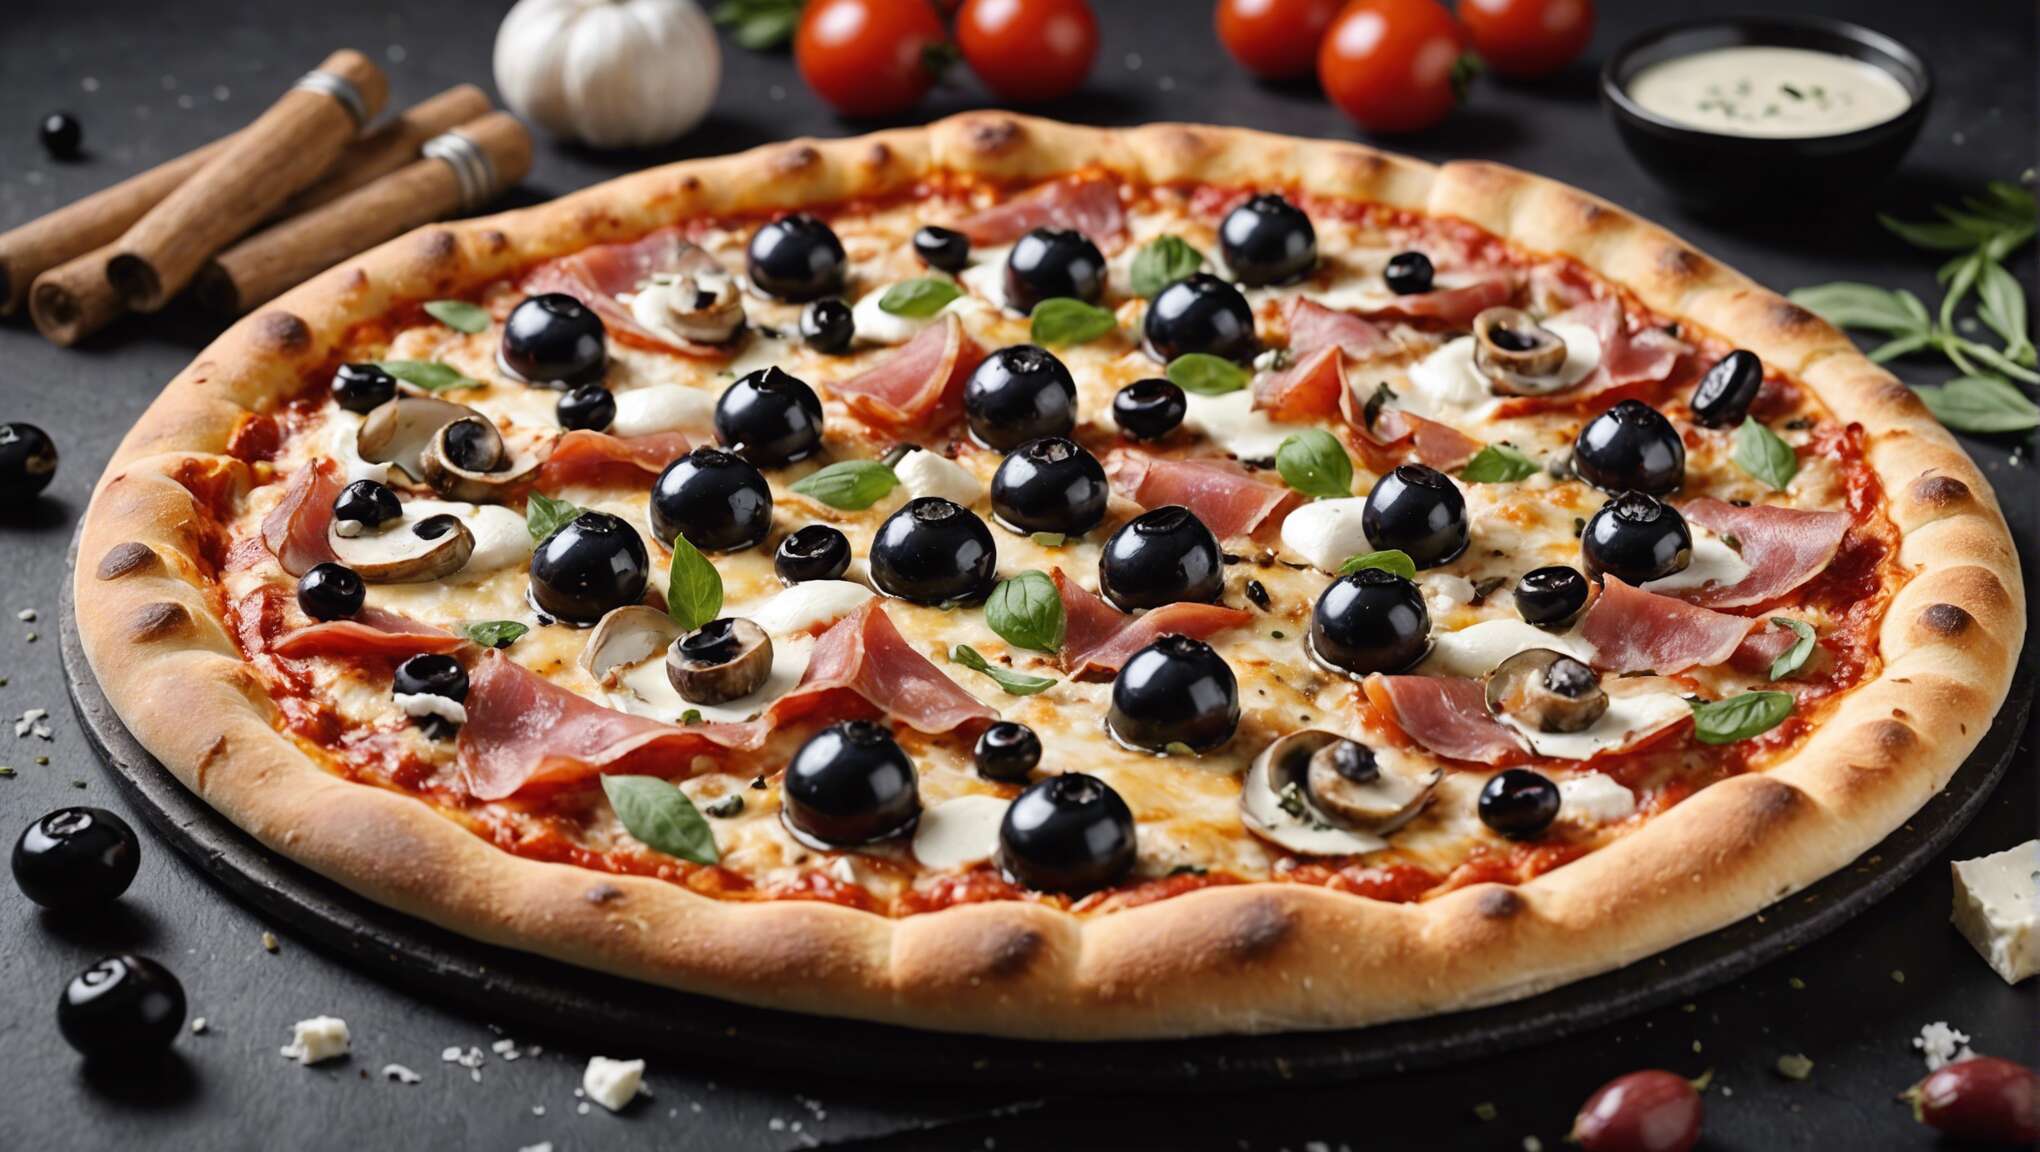 Pizza 4 saisons au gorgonzola : recette et astuces pour un plat savoureux